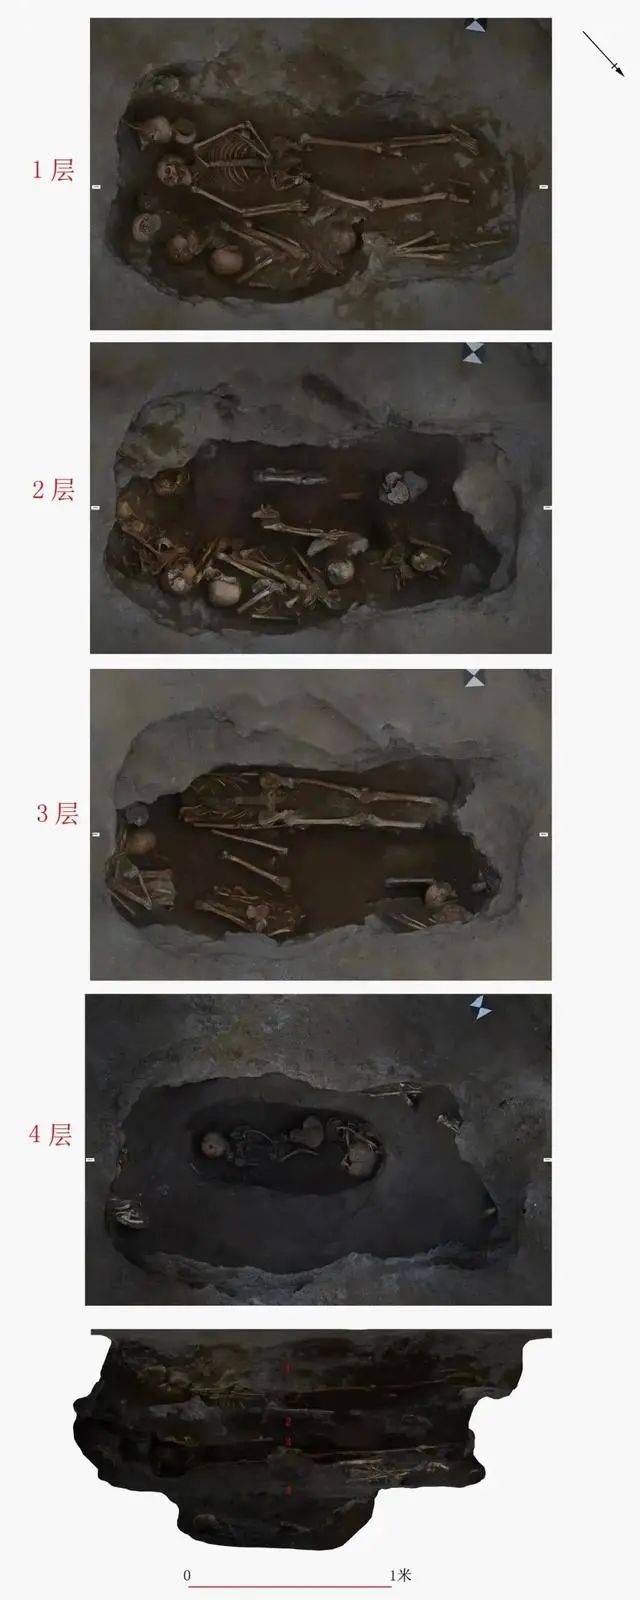 丽江一中学重建足球场 发现3千平米古墓单坑19颗头骨